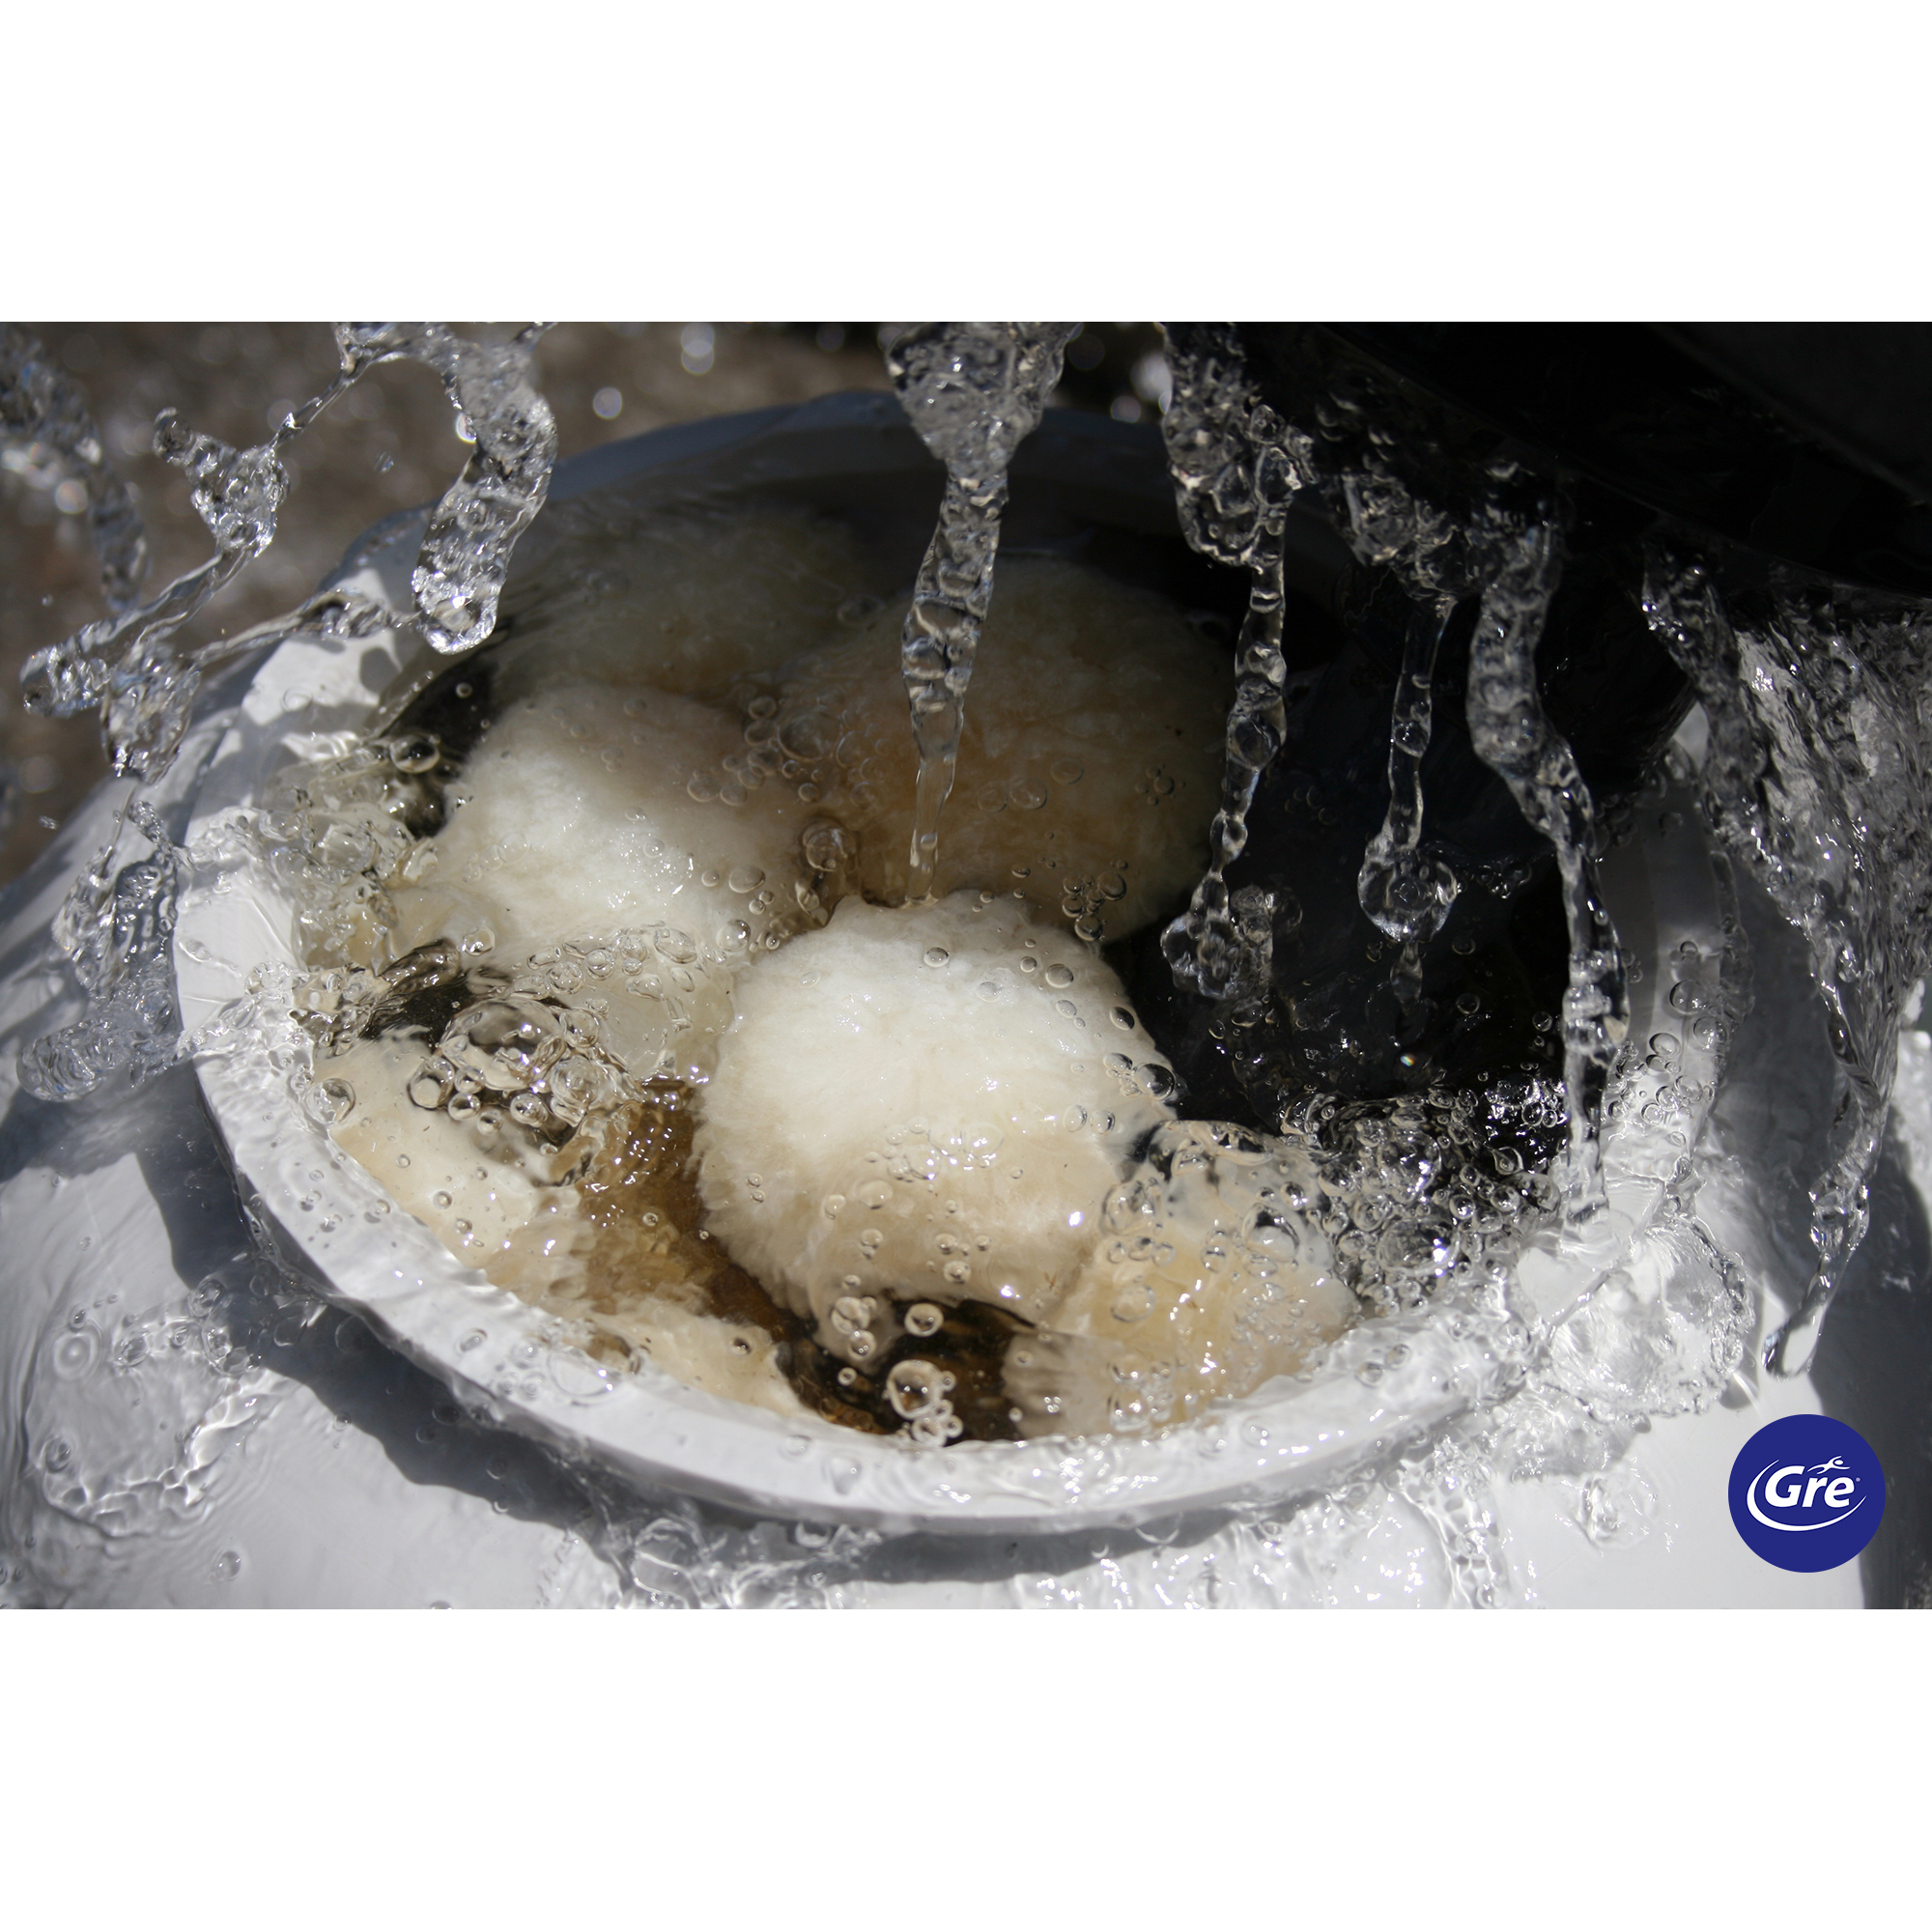 Filterballs für Sandfilteranlagen 'Aqualoon' 700 g + product picture